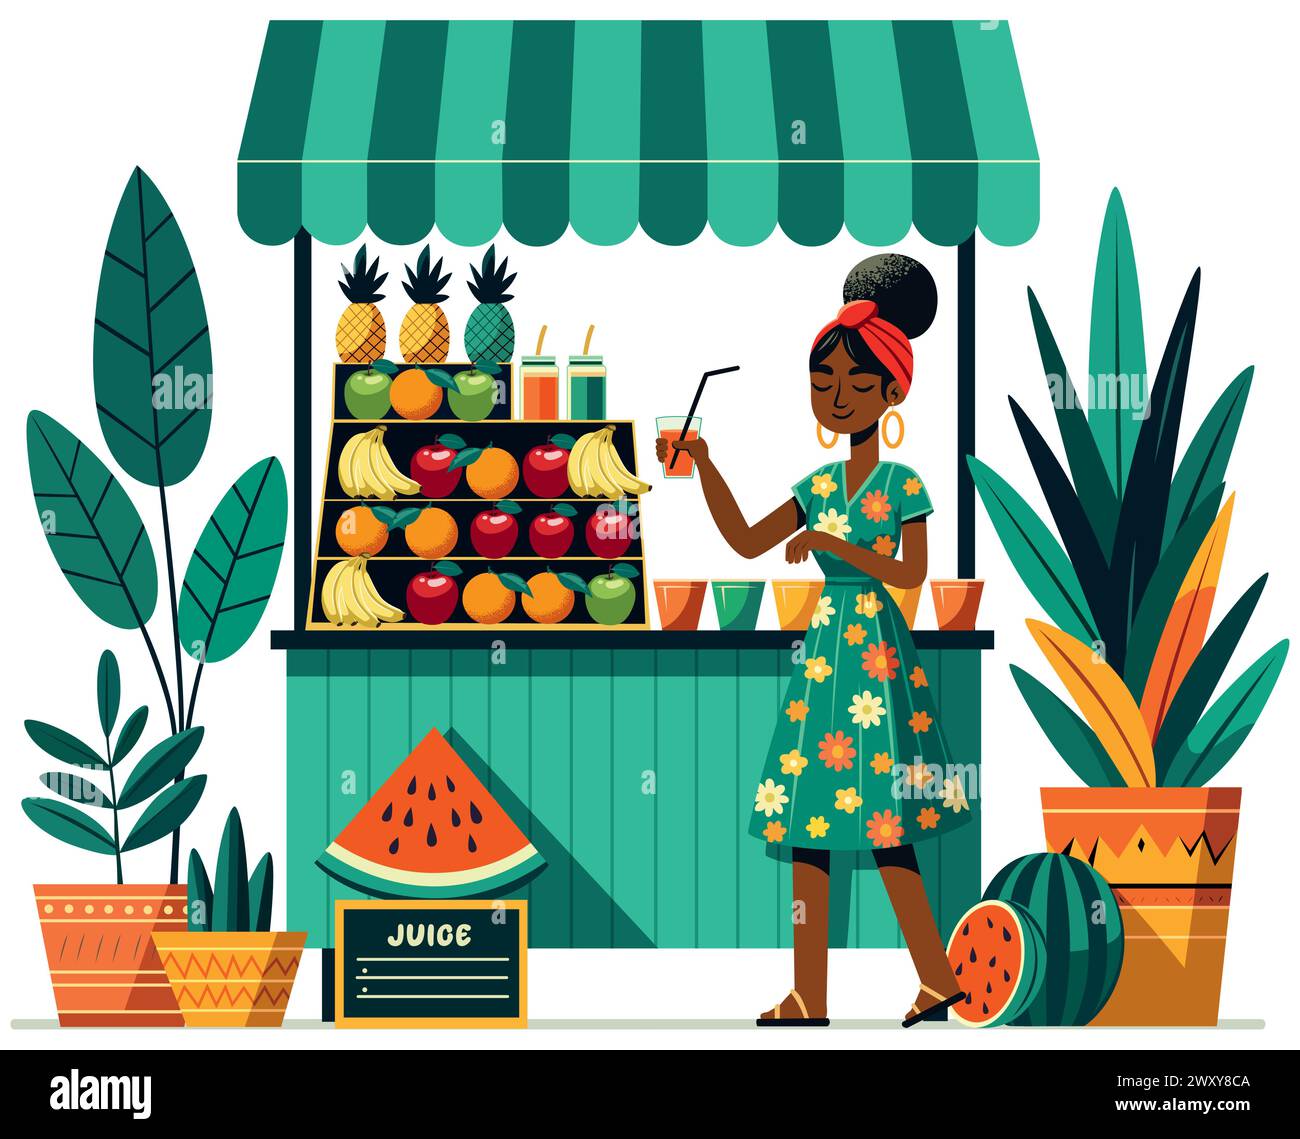 Illustrazione dal design piatto di una donna africana che serve succo di frutta in un vivace stand, isolato su sfondo bianco. Illustrazione Vettoriale